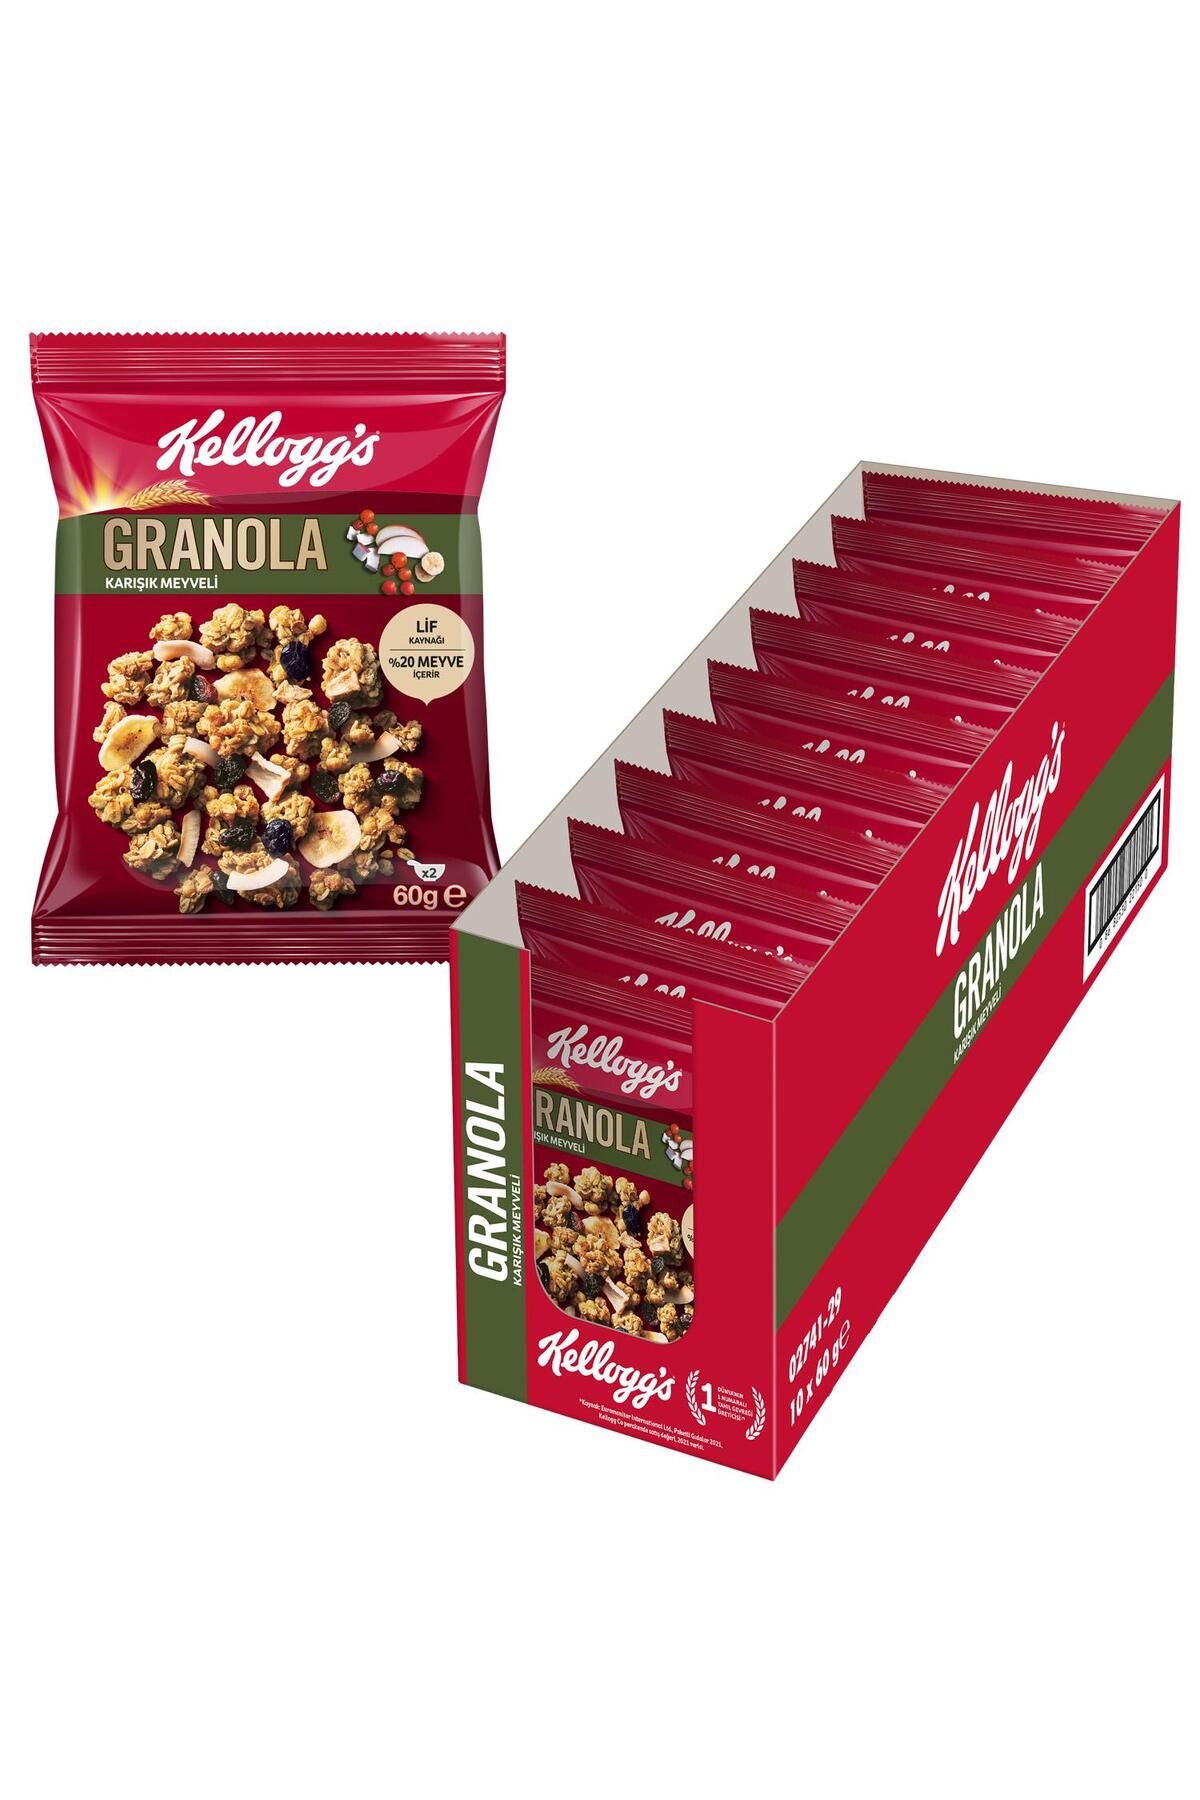 Kellogg's Granola Karışık Meyveli 60 gr X 10 Adet, %45 Yulaf Içerir, %20 Kurutulmuş Meyve, Granola Kap Hediye!